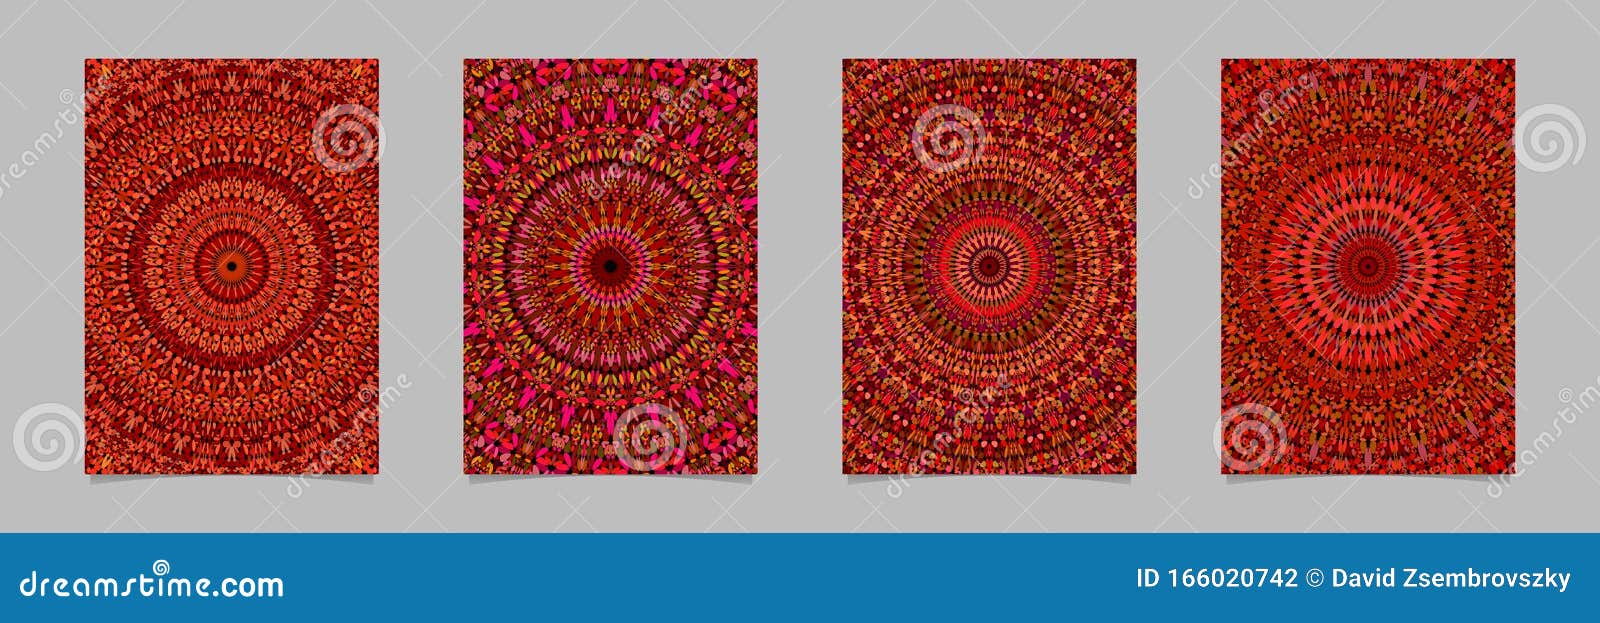 Σύνολο προτύπων φόντου σελίδας Red abstract petal kaleidoscope mandala - σχέδια επιστολόχαρτων διανυσμάτων